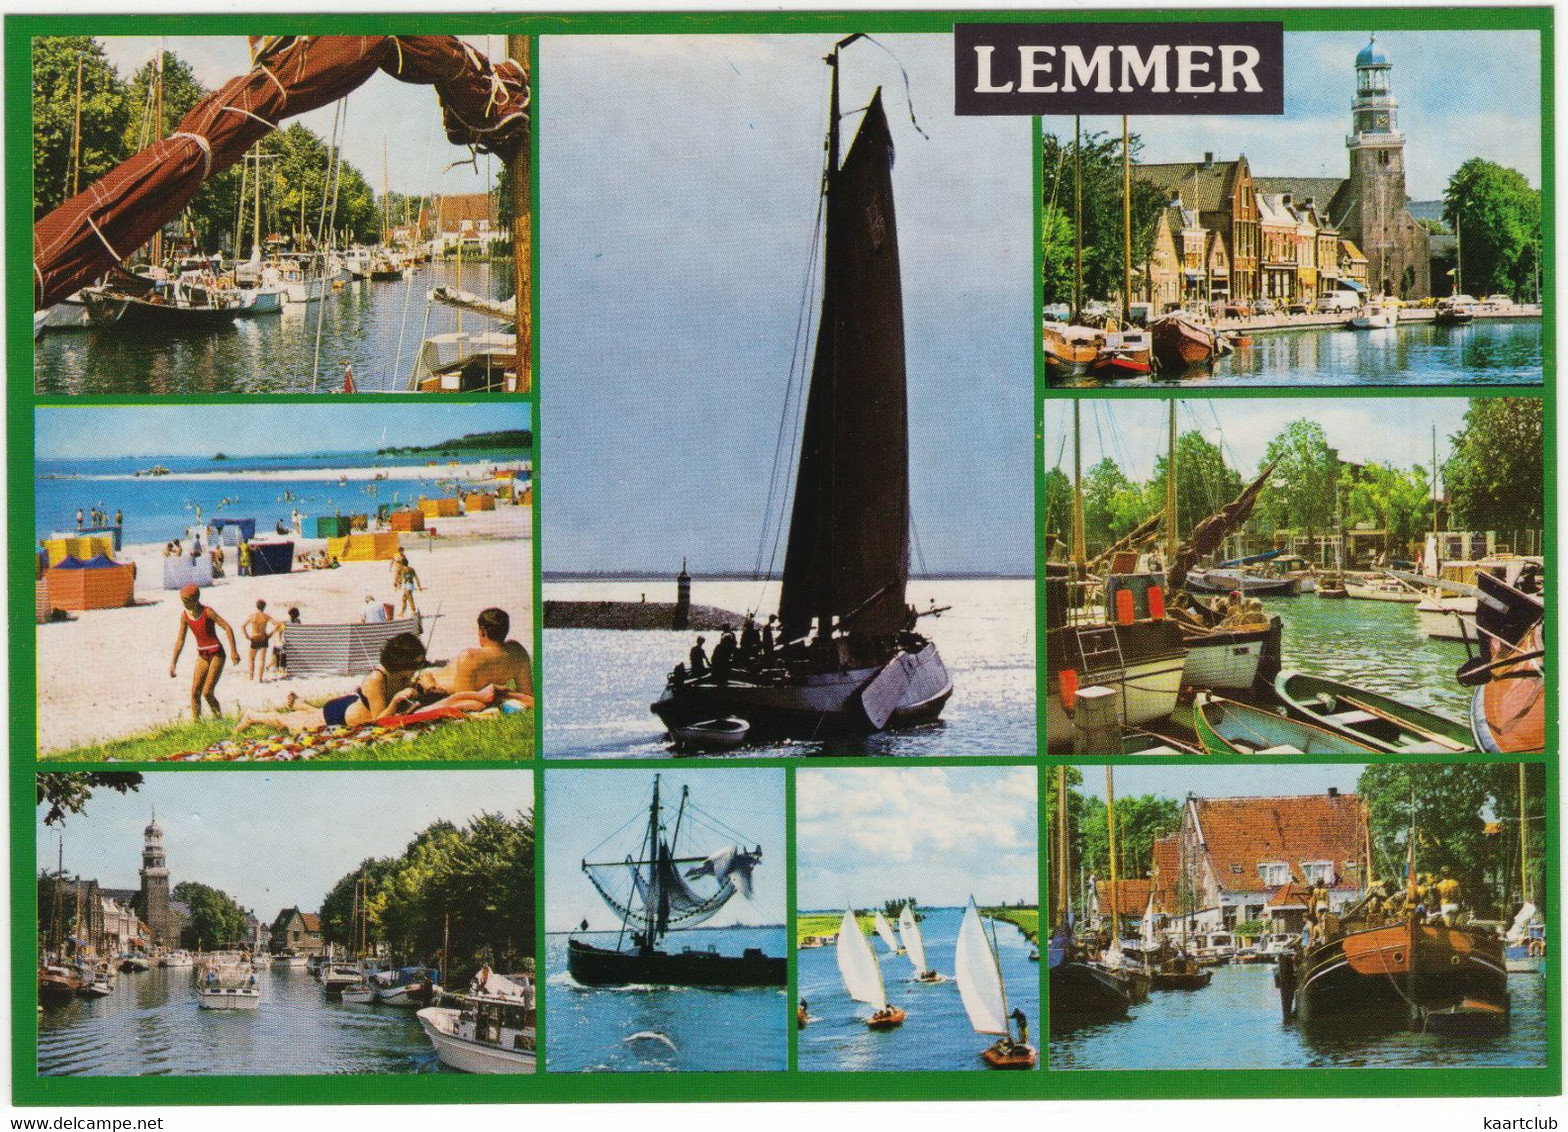 Lemmer - (Friesland, Holland) - Lemmer